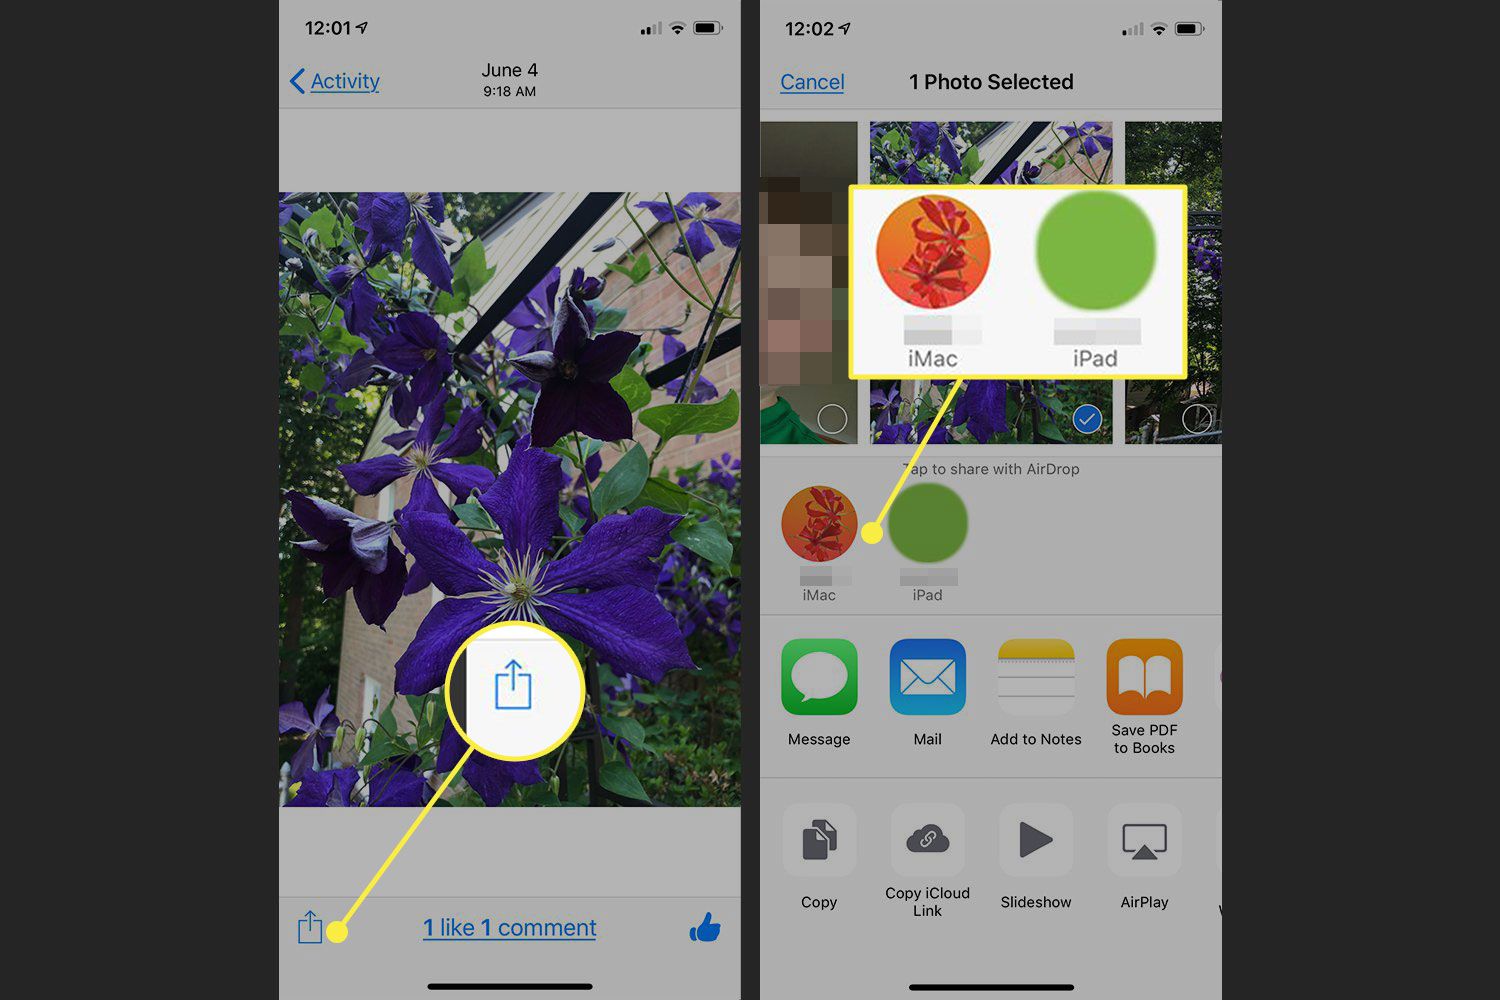 Schermafbeeldingen van een iPhone met de Share-knop en AirDrop-toegankelijke apparaten gemarkeerd